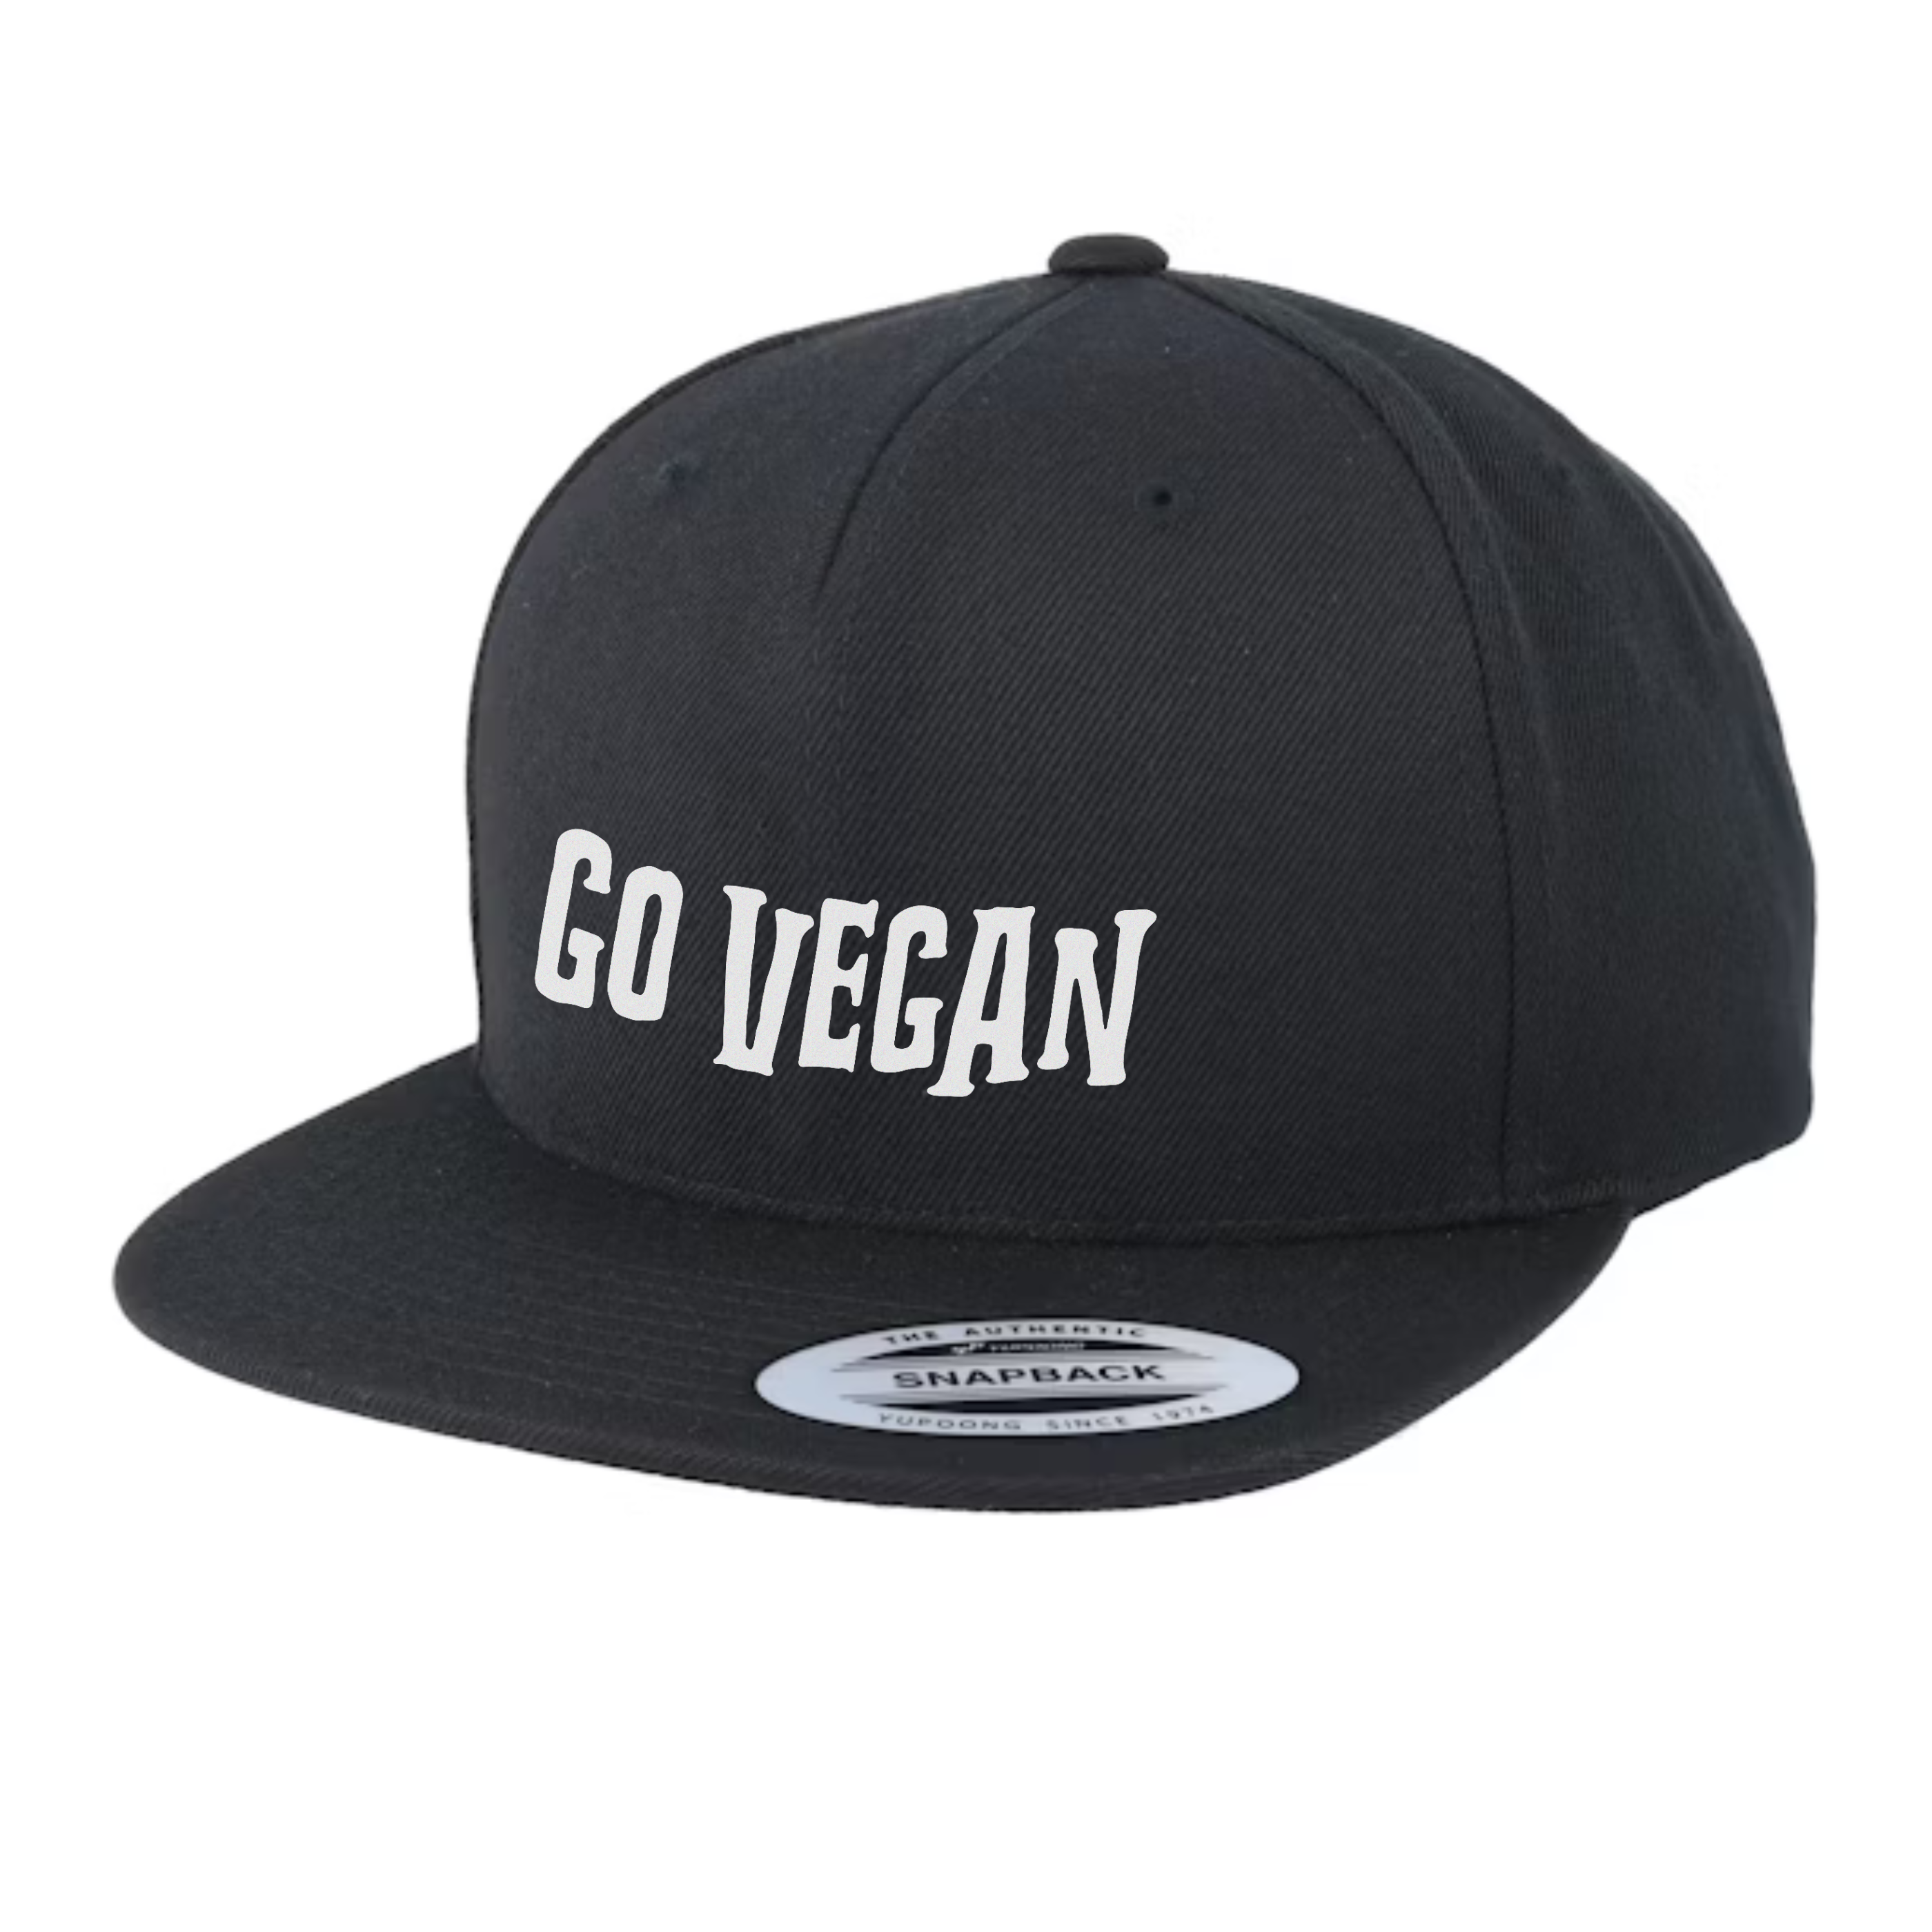 Go Vegan Text - Black Snapback Cap - Empatii